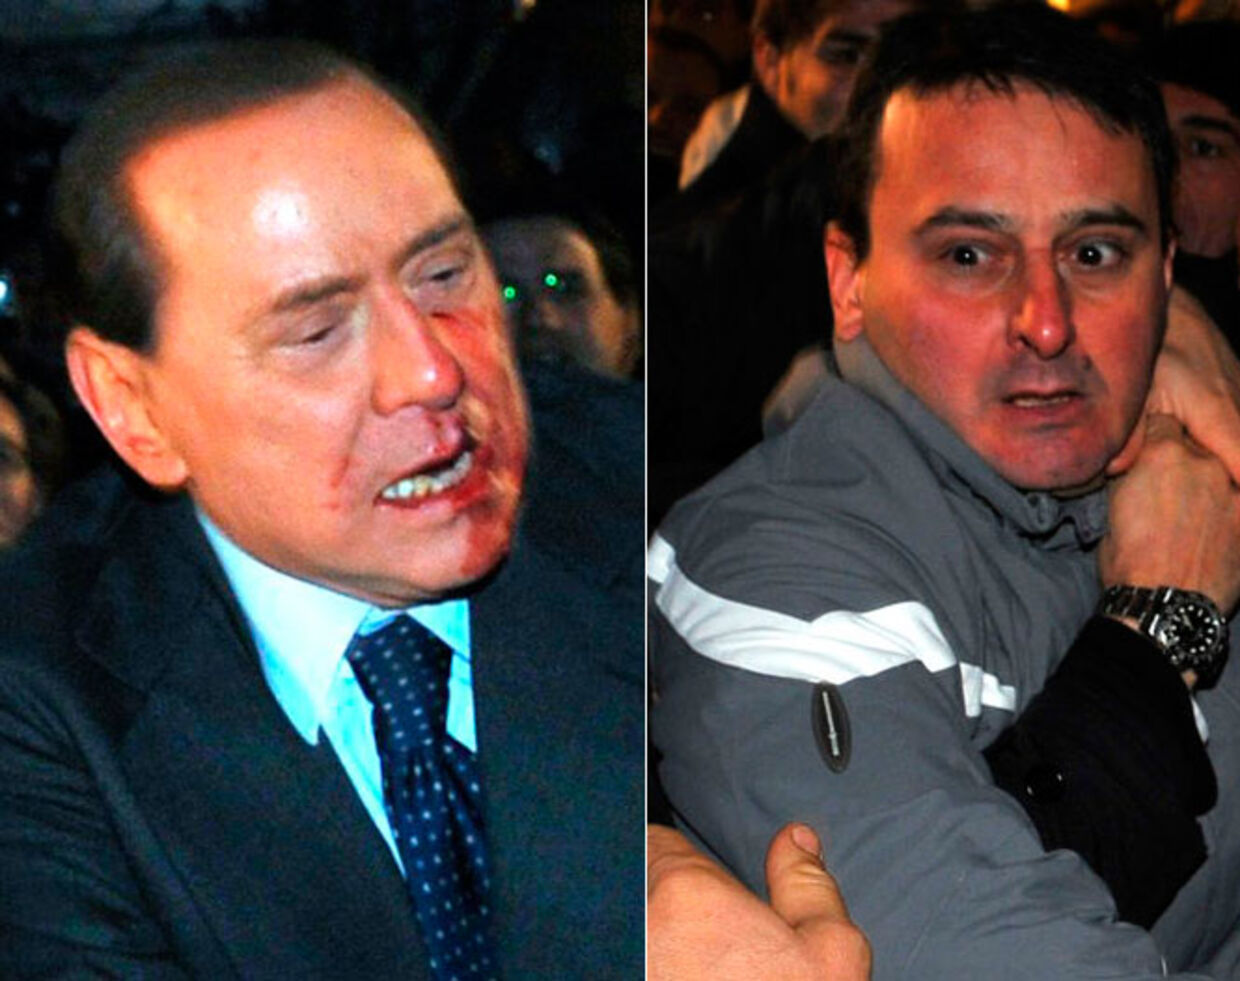 Gerningsmanden, den 42-årige Massimo Tartaglia (th.), blev omgående anholdt. Han slog angiveligt to tænder ud på premierministeren.